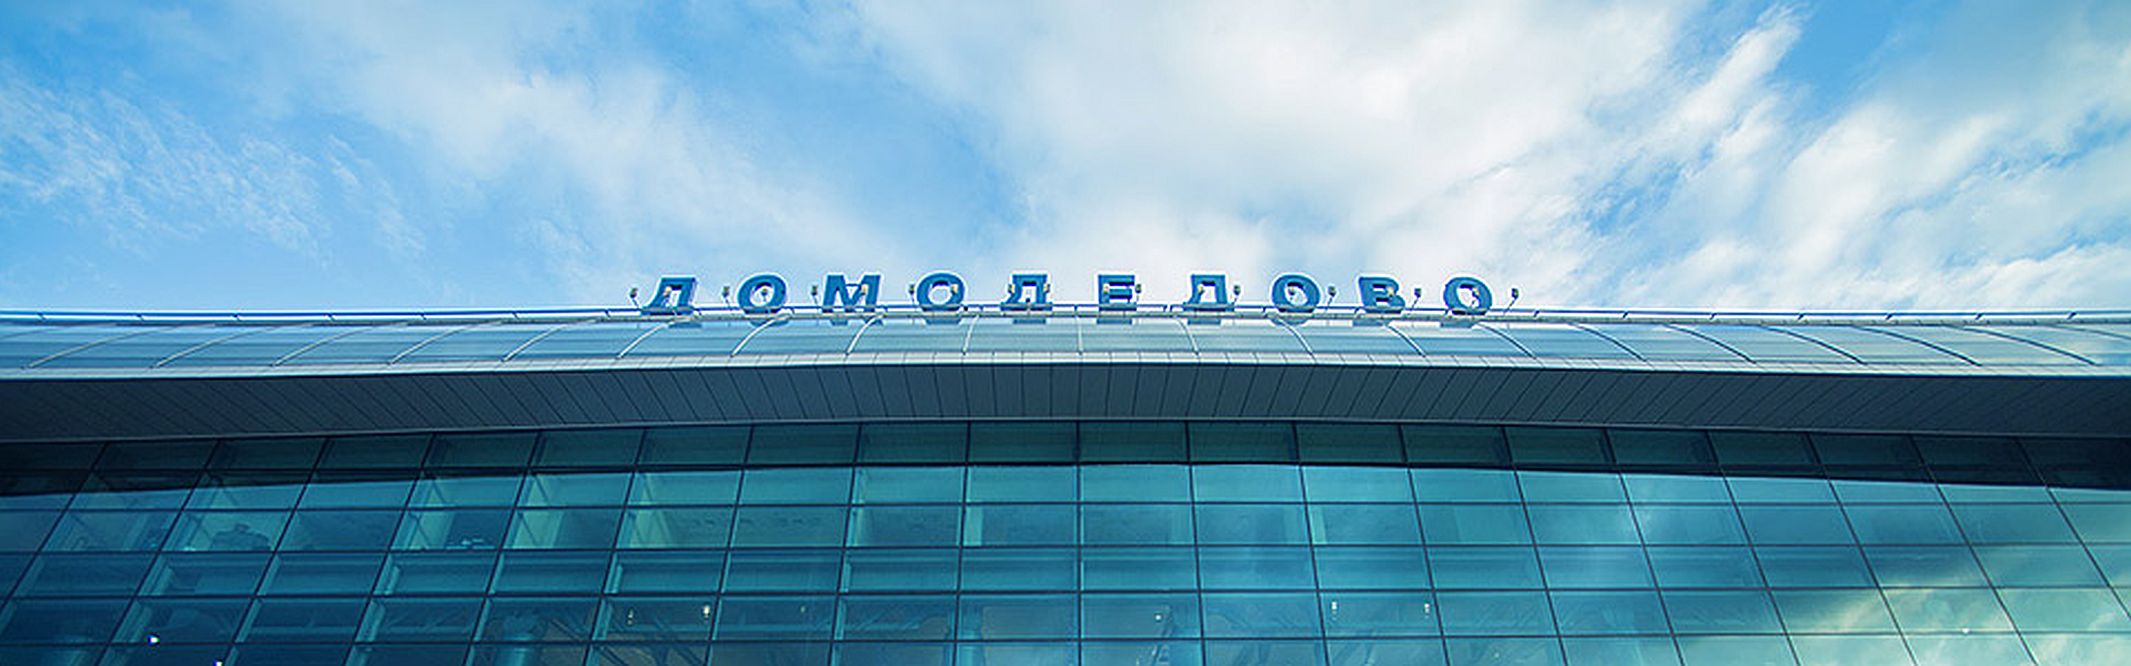 Часть строительных работ в "Домодедово" не успеют завершить к ЧМ-2018